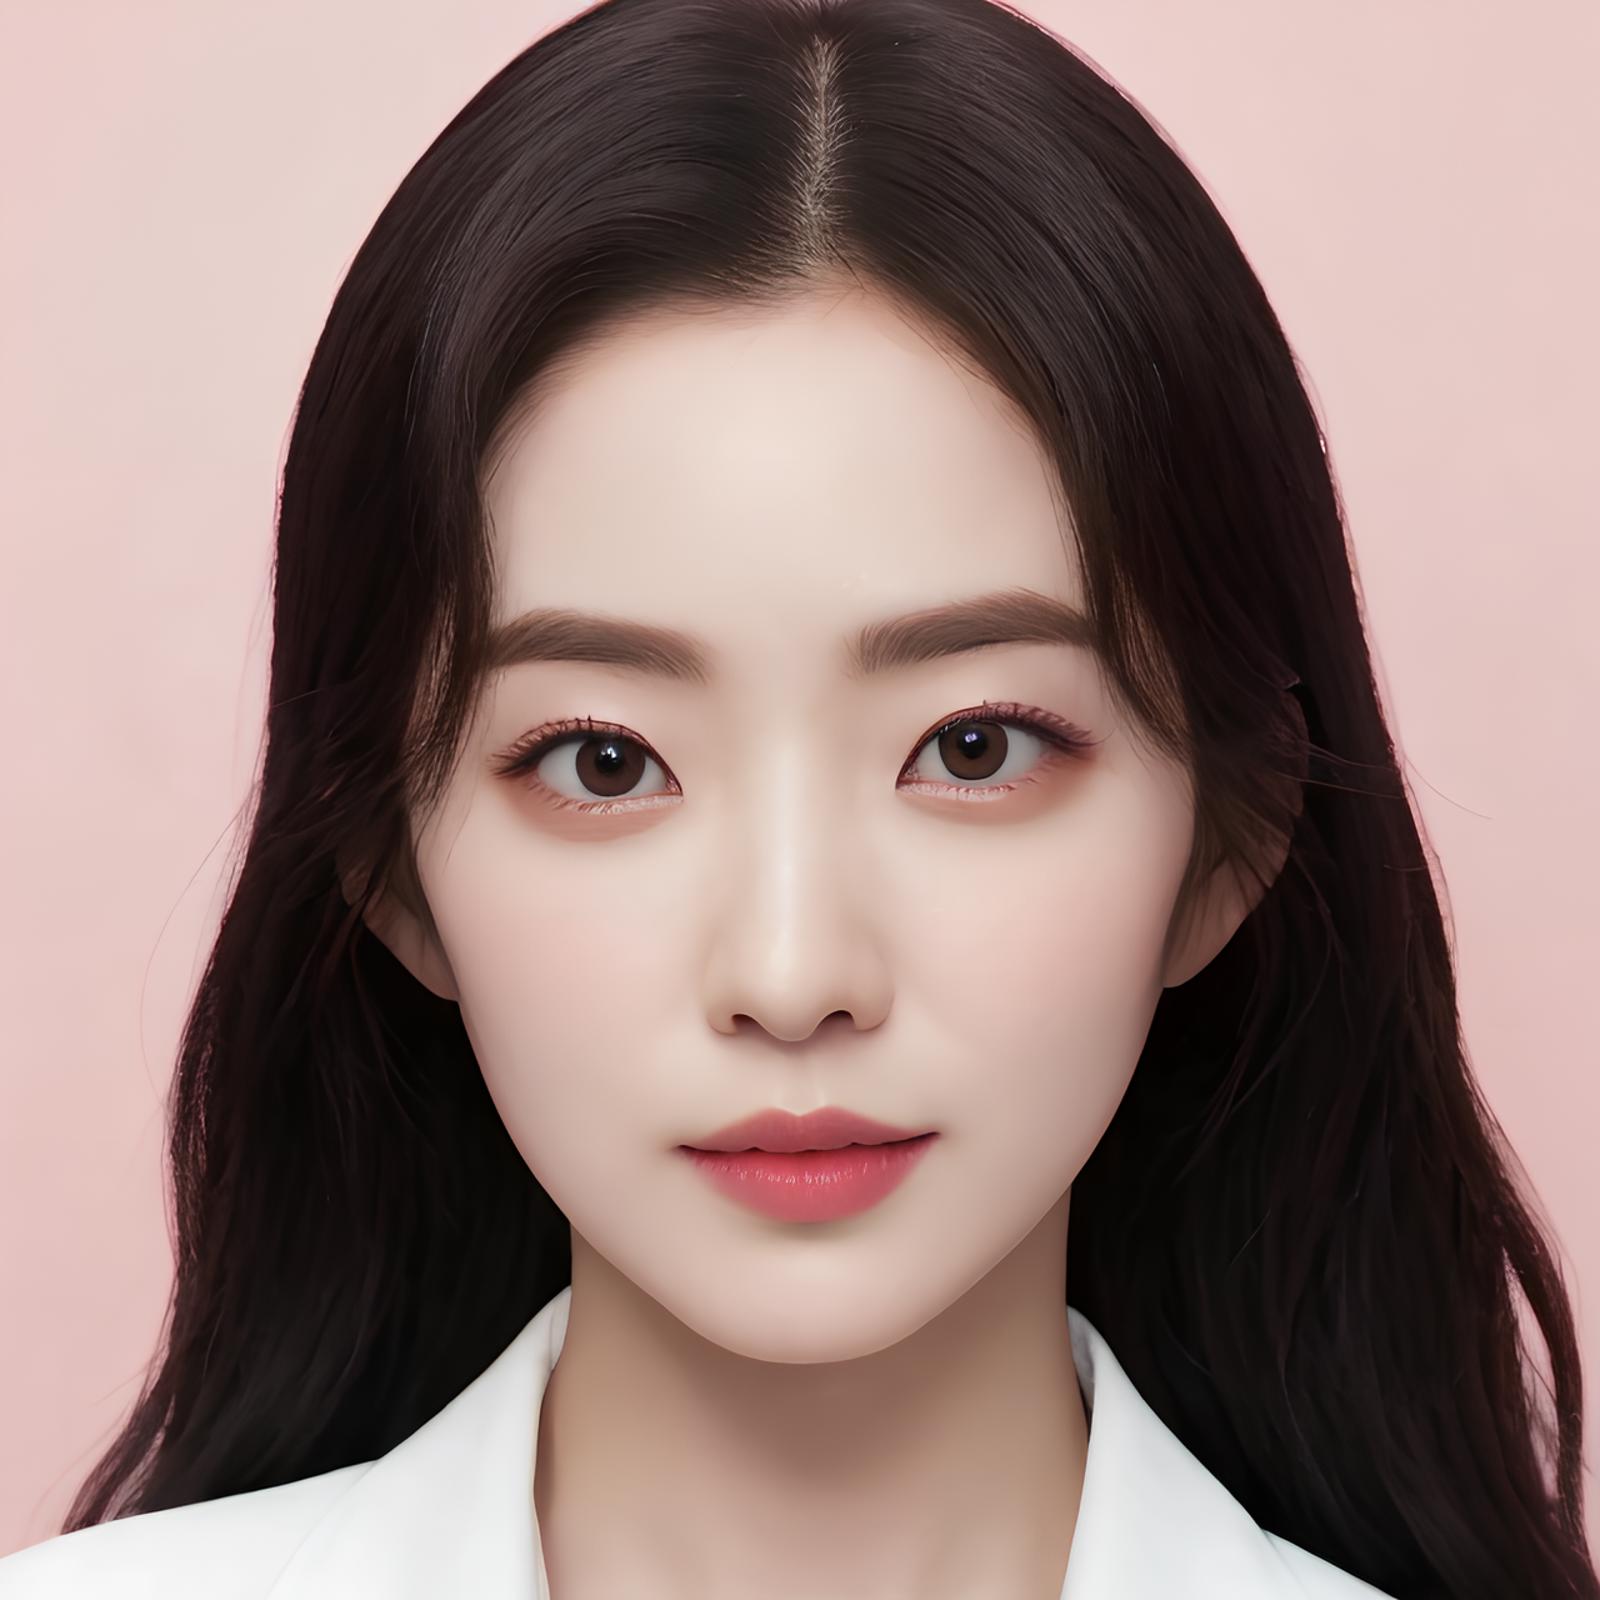 Not Red Velvet - Irene image by Tissue_AI